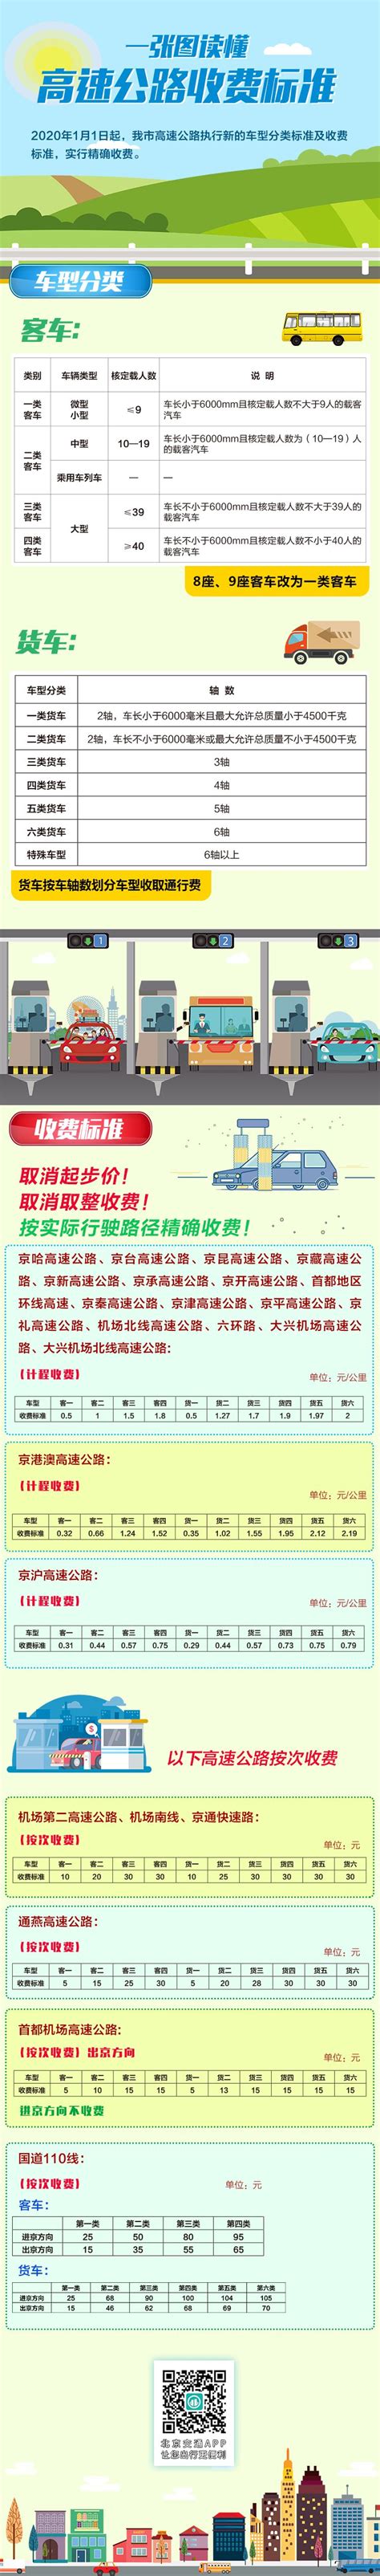 2020年1月1日北京市高速公路收费新标准(车型分类标准及收费标准)-便民信息-墙根网